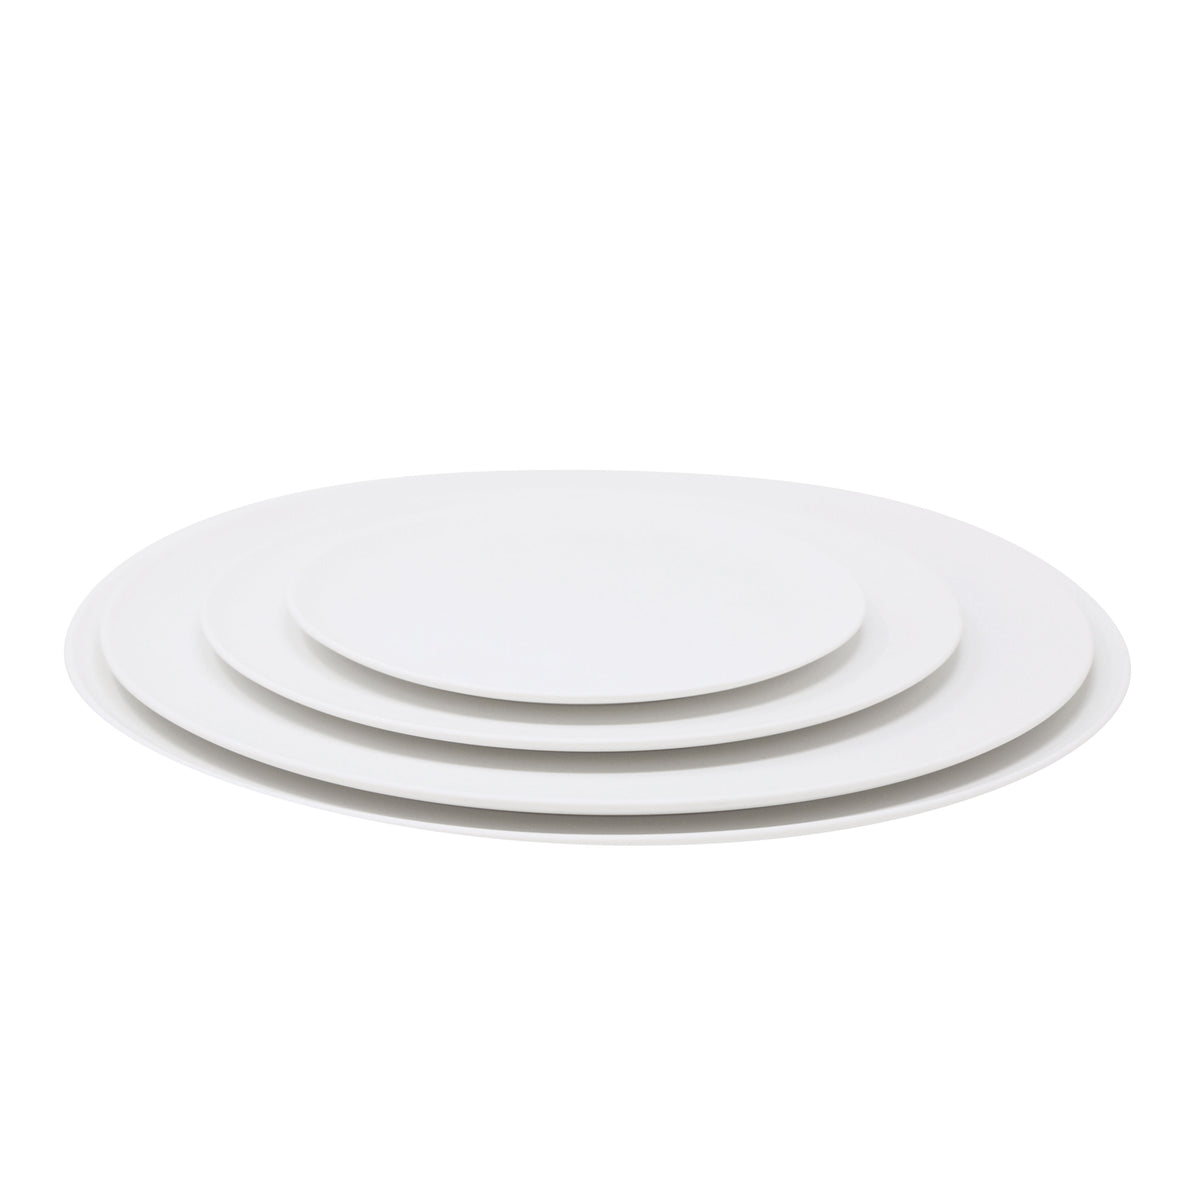 SLIM blanc satiné - Assiette 29 cm